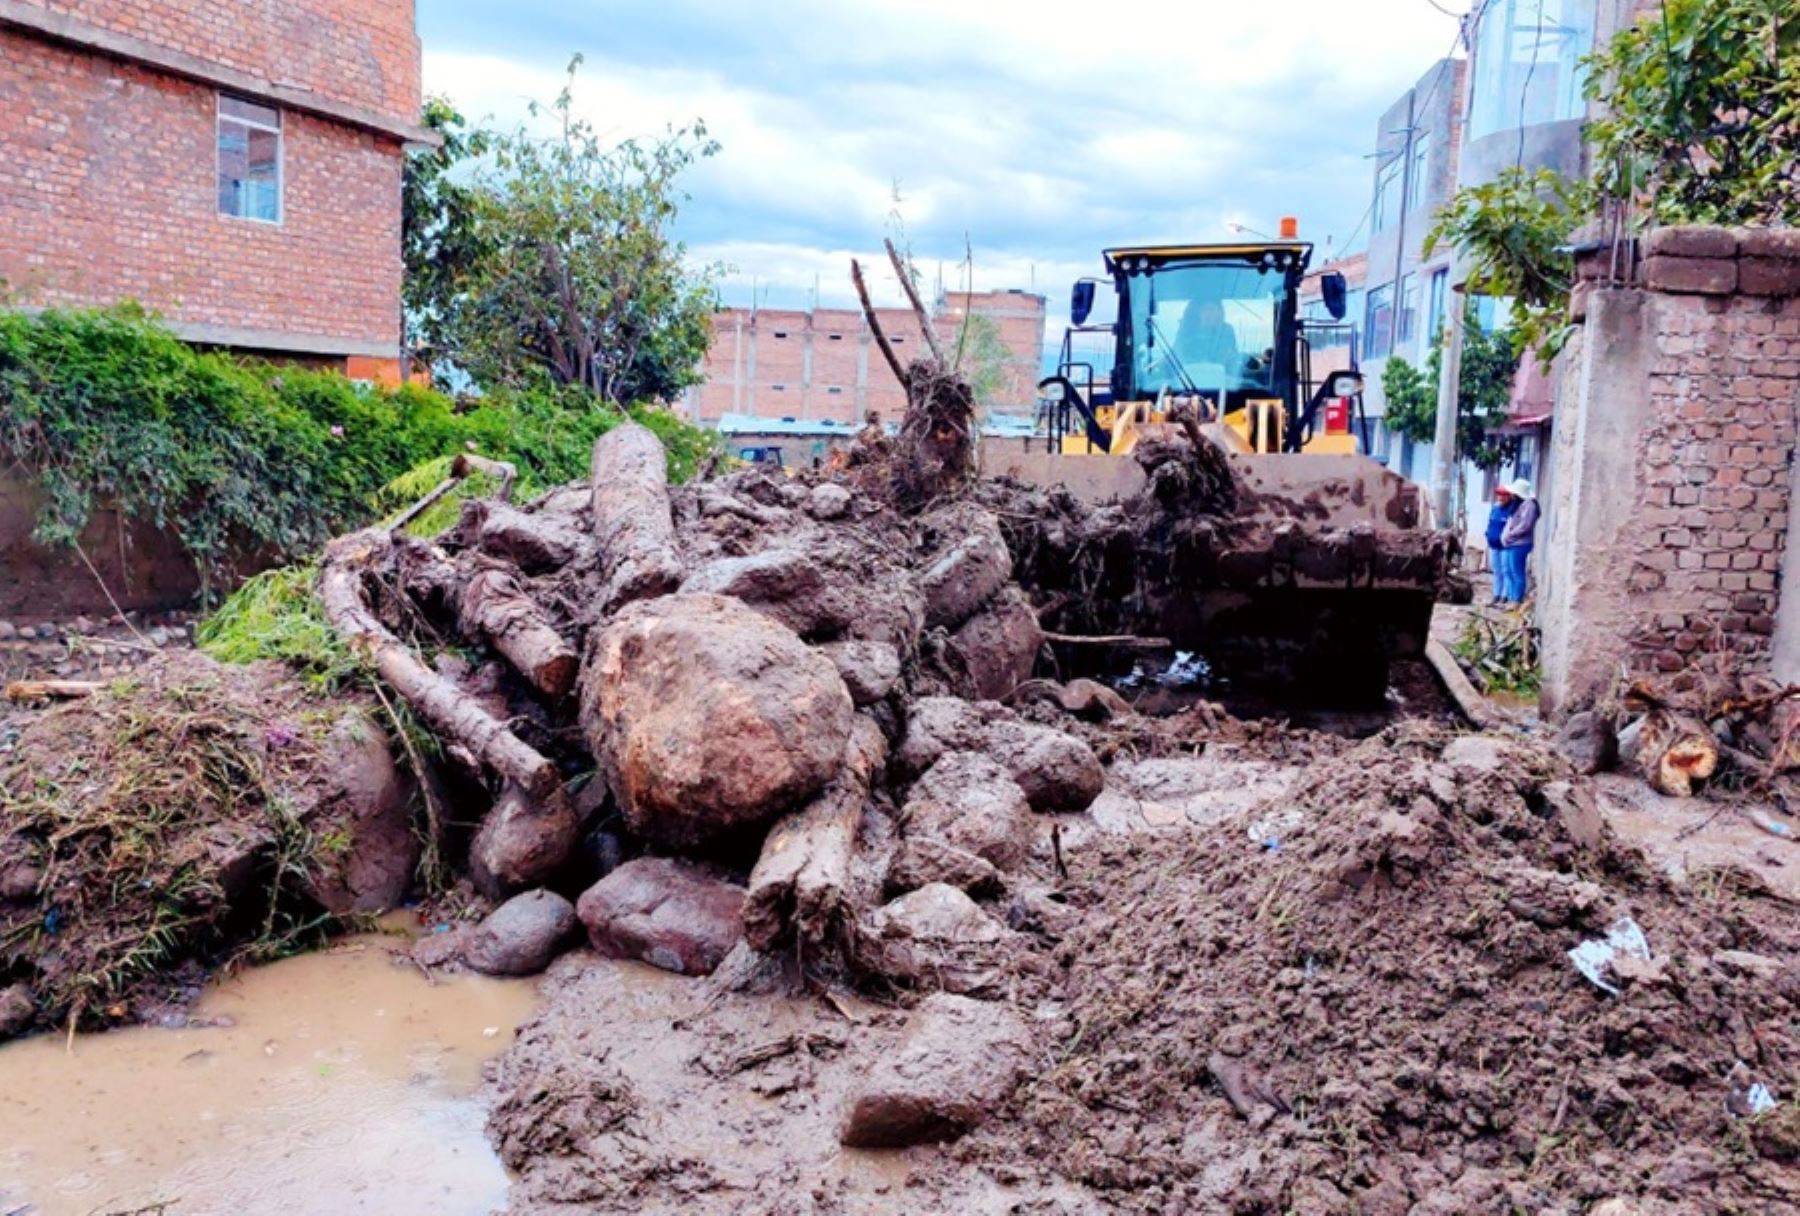 El desborde del río Chaquihuaycco, provocado por una torrencial lluvia, dejó al menos 40 viviendas afectadas y cuantiosos daños materiales en el distrito de San Juan Bautista, provincia de Huamanga, en el departamento de Ayacucho.